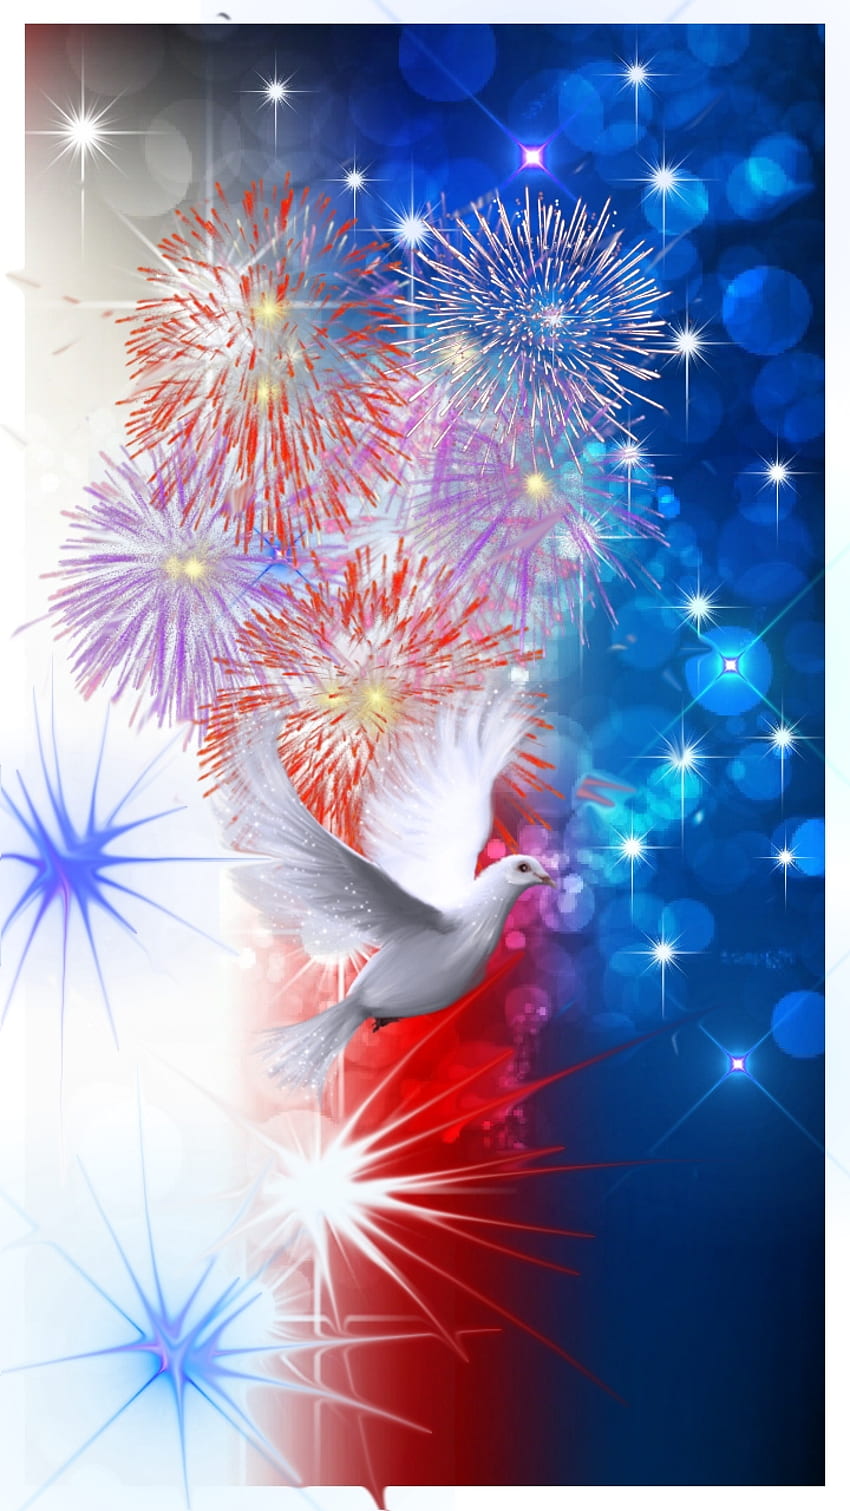 Keempat, usa, dove, patriot, juli, kembang api, kemerdekaan, hari wallpaper ponsel HD